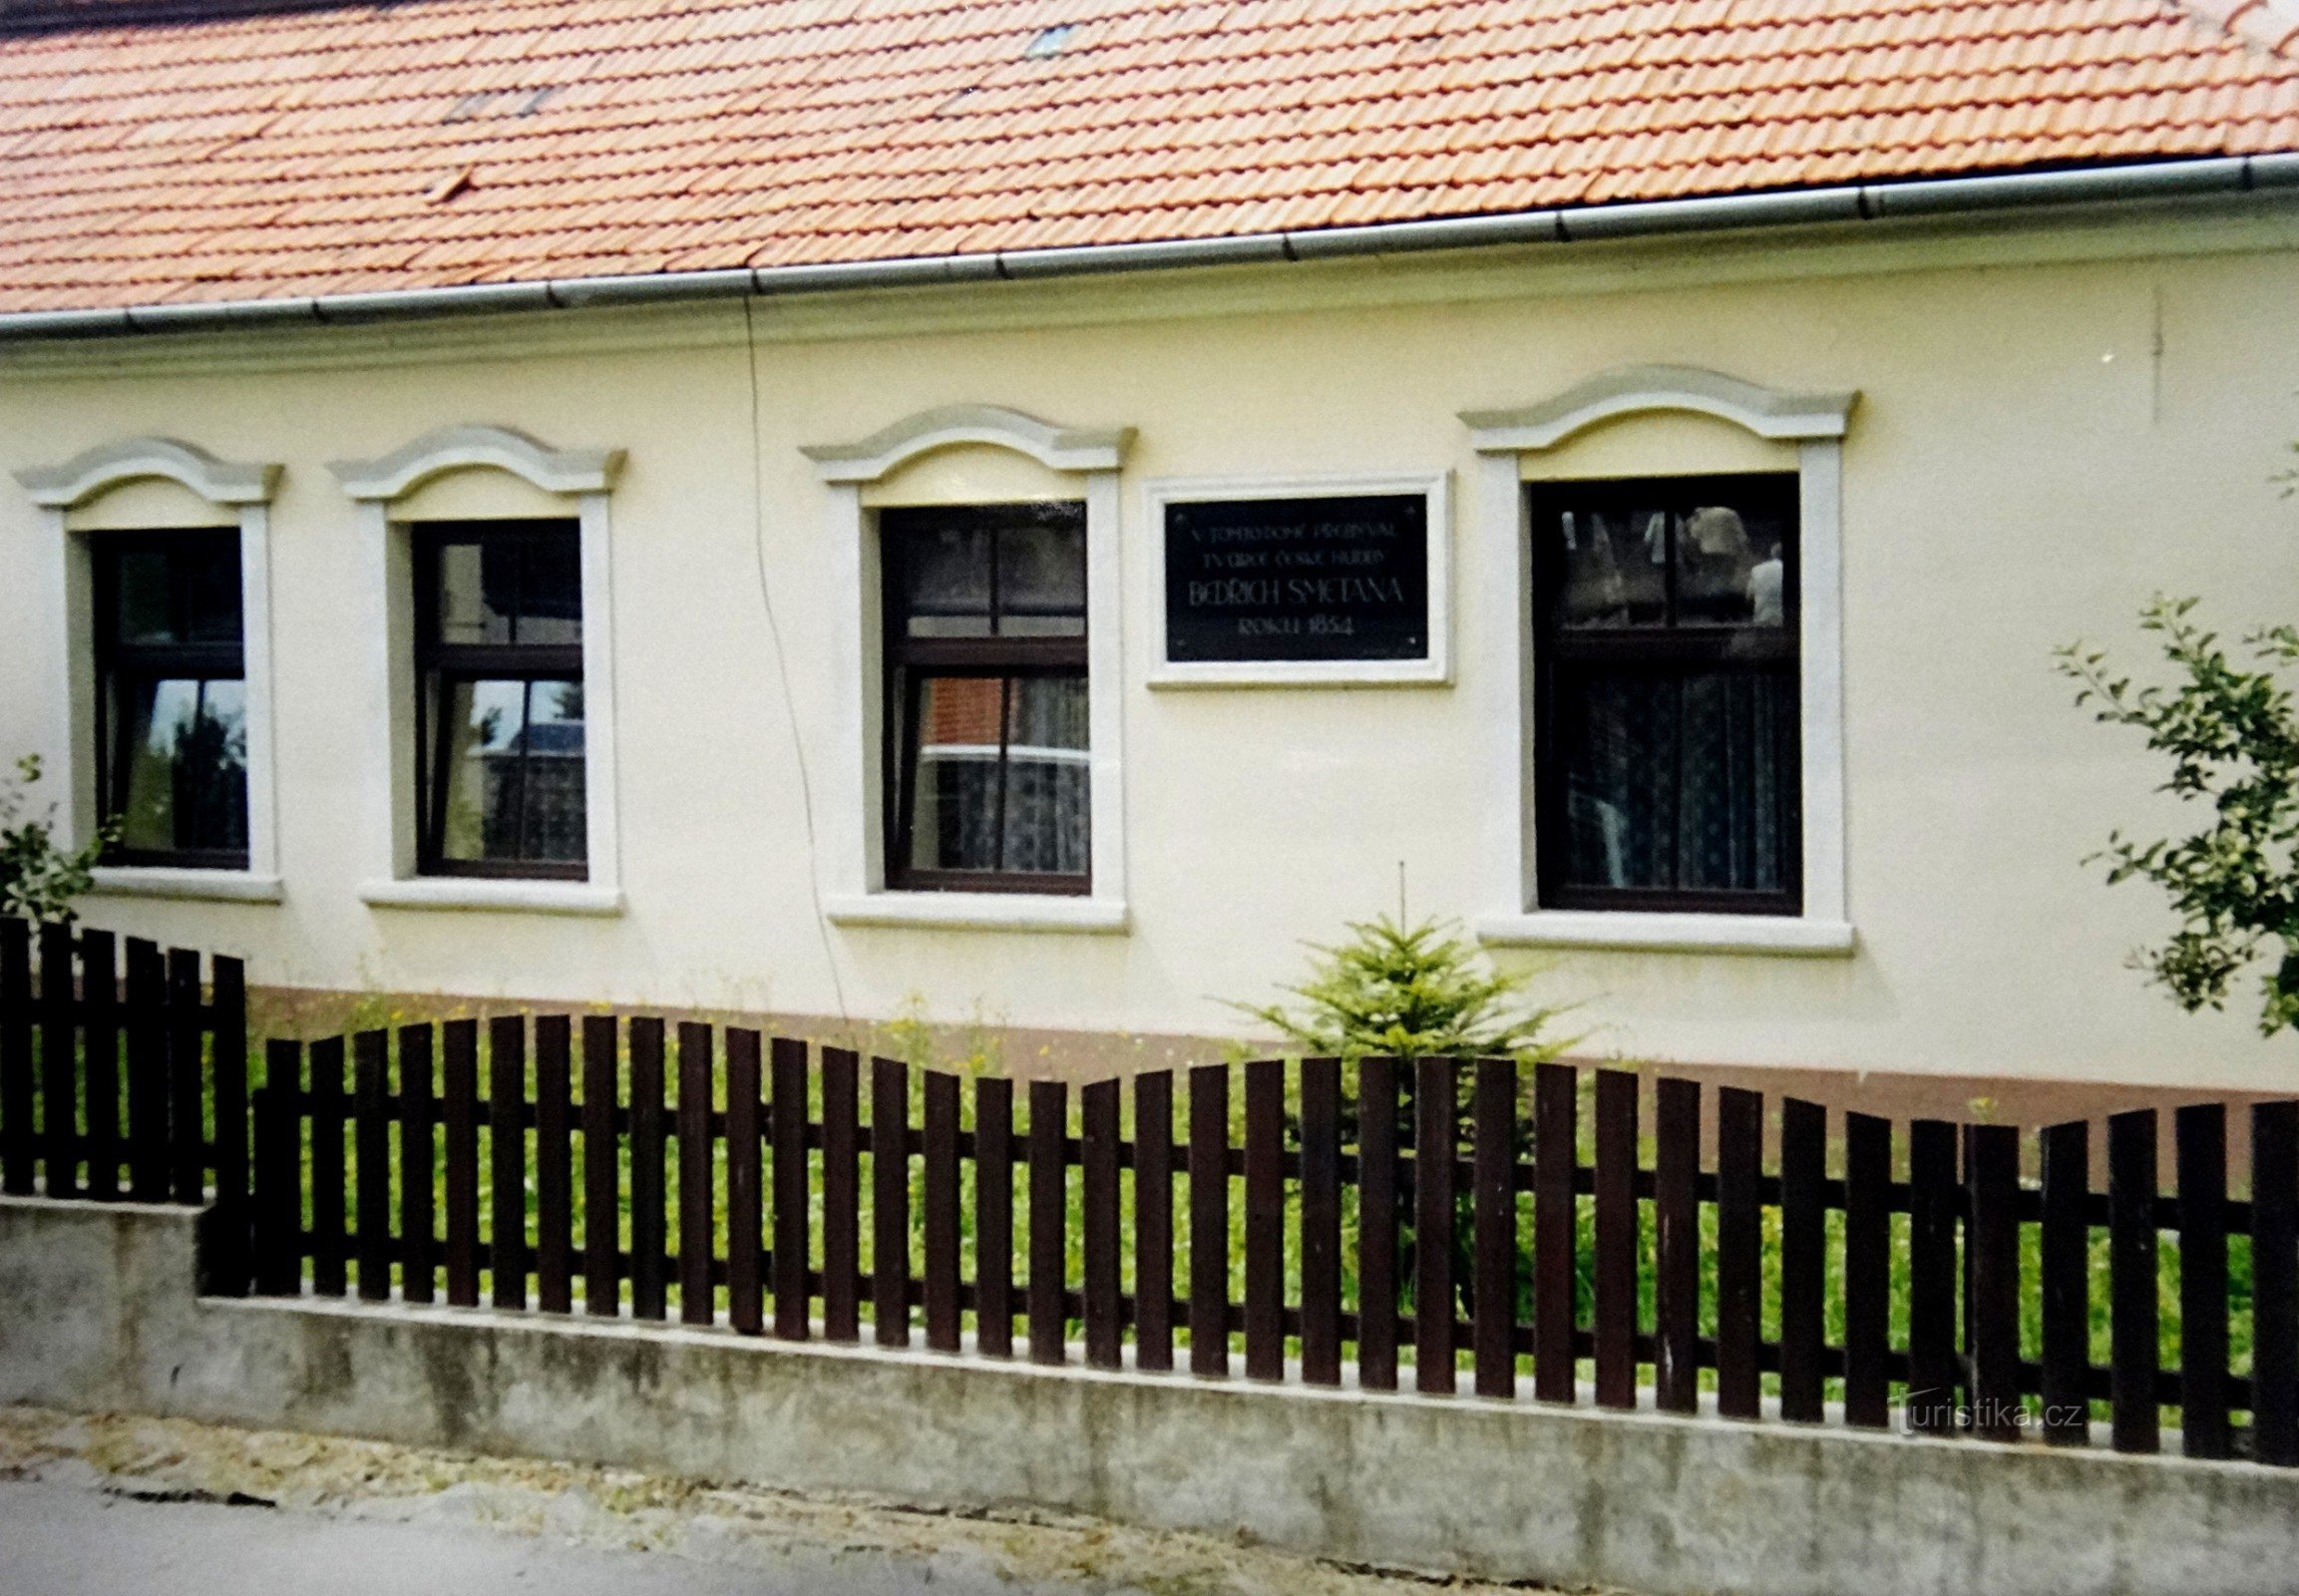 Dom Týn nad Bečvou, w którym mieszkała rodzina Smetanov